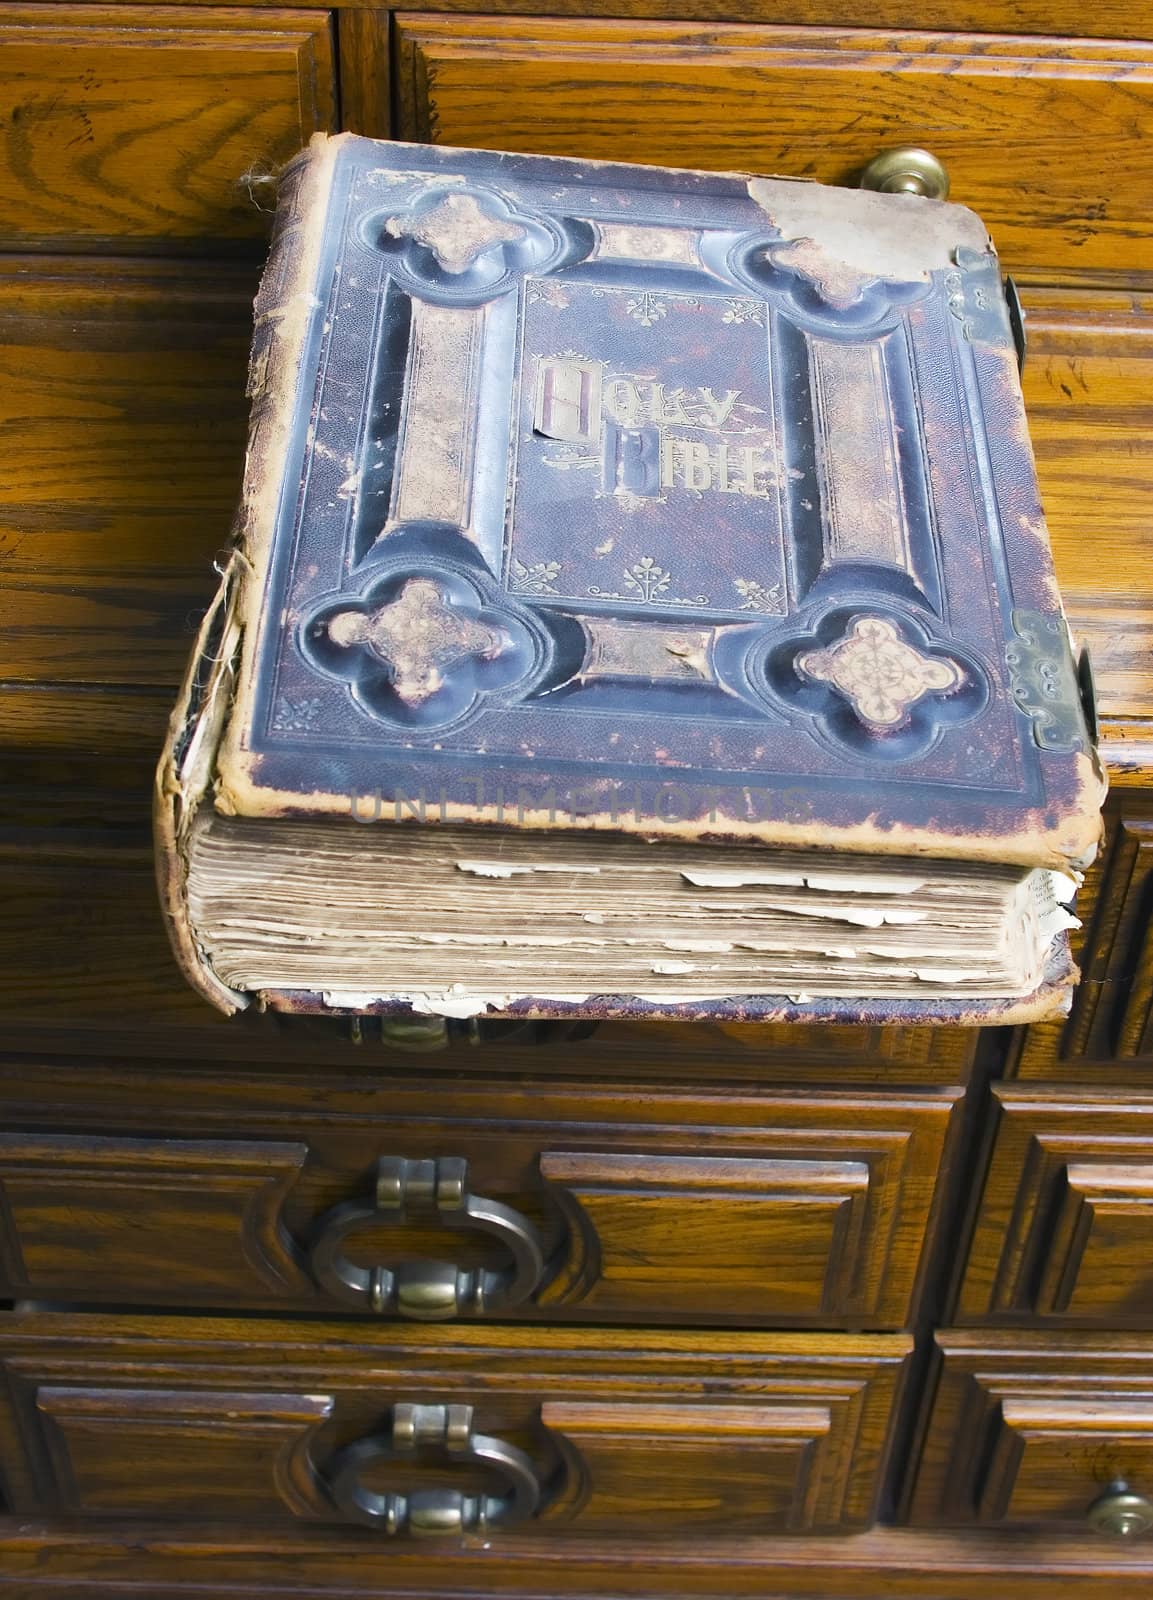 A 1825 preacher's bible sits on a dresser.